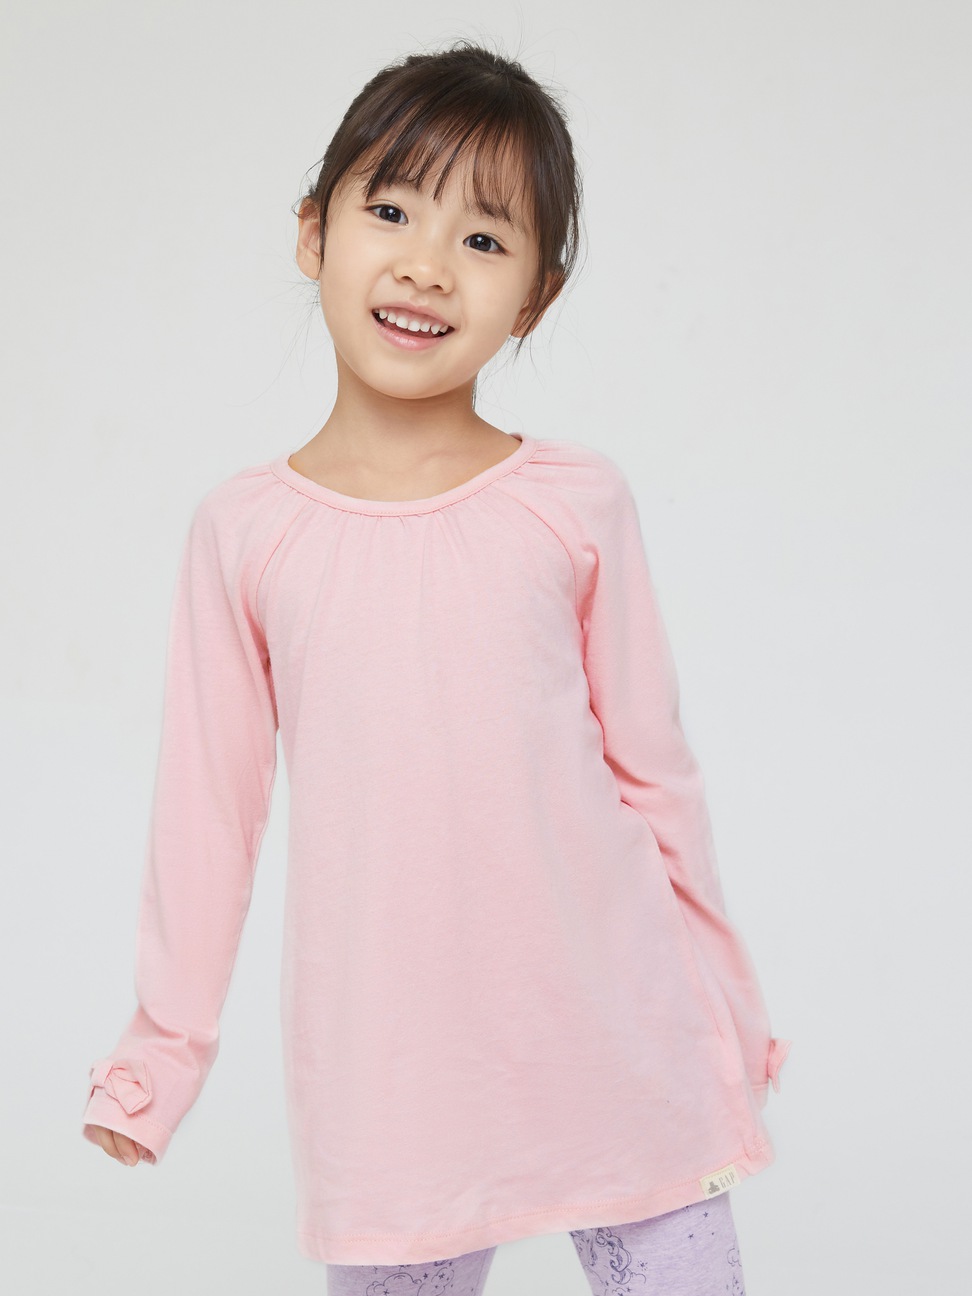 女幼童裝|簡約素色長袖T恤-冰粉色